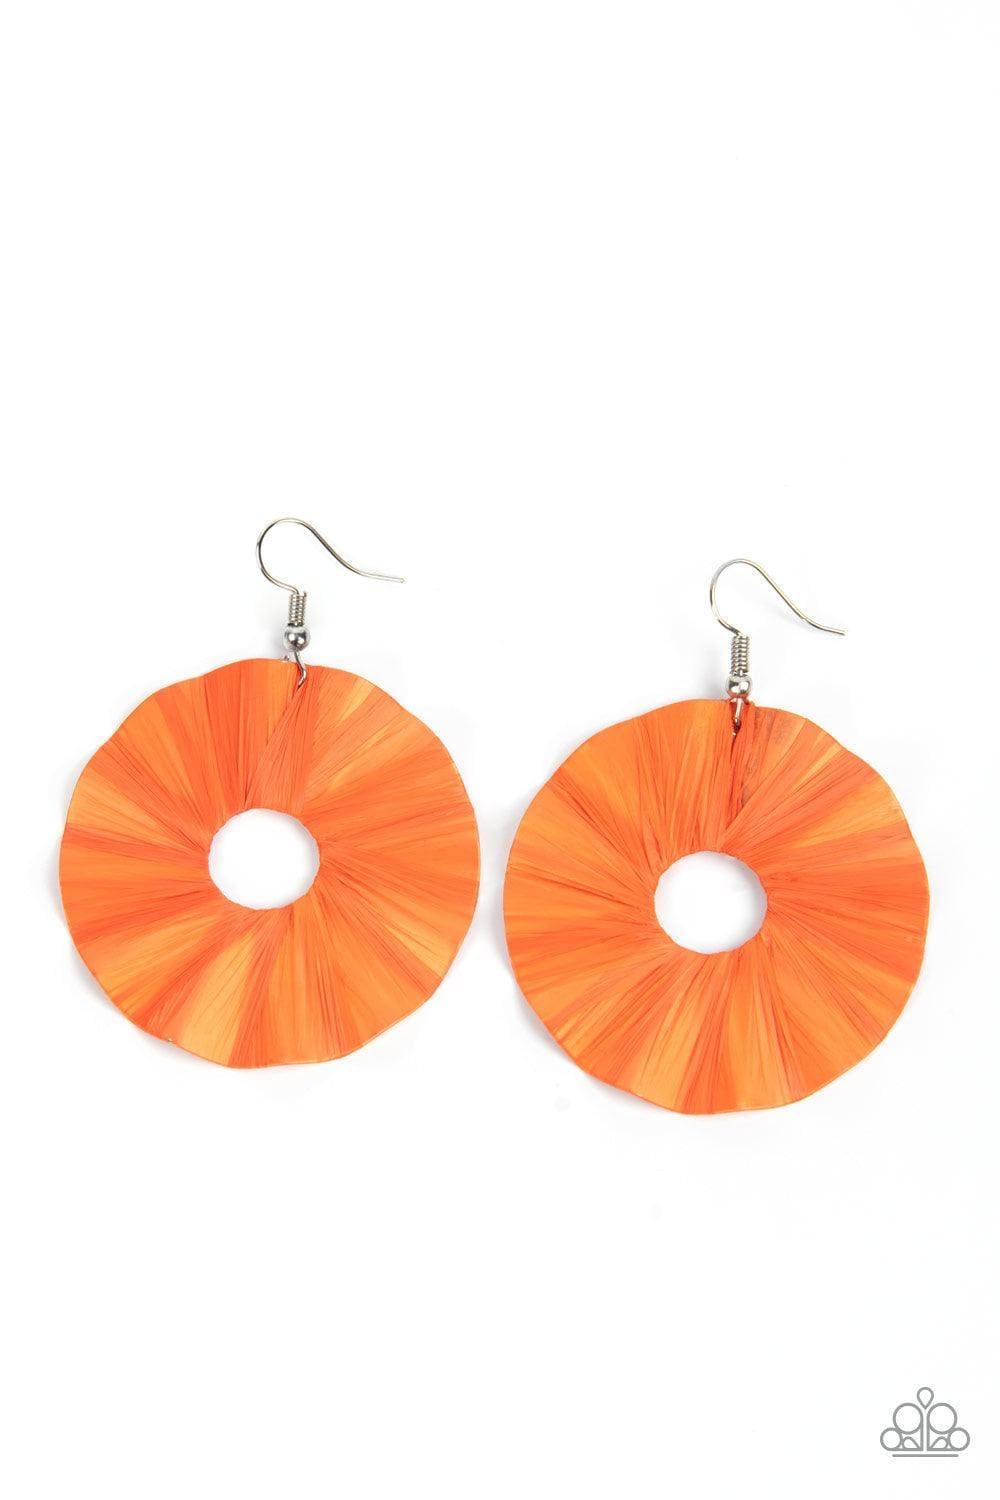 Paparazzi Accessories - Fan The Breeze - Orange Earrings - Bling by JessieK